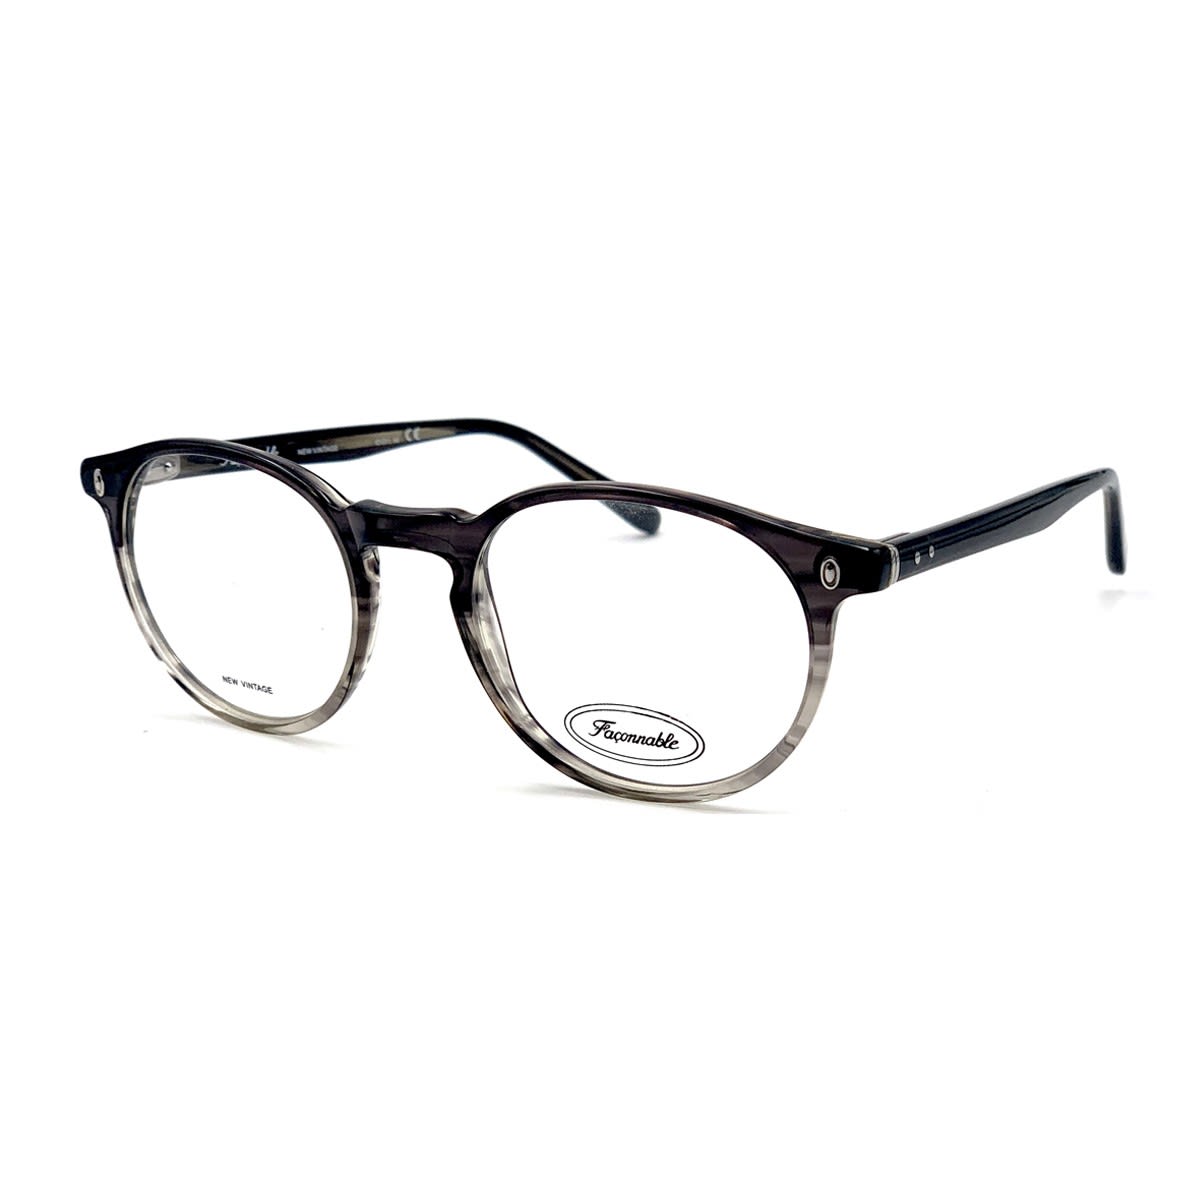 Façonnable Nv246 E290 49-19-145 Glasses